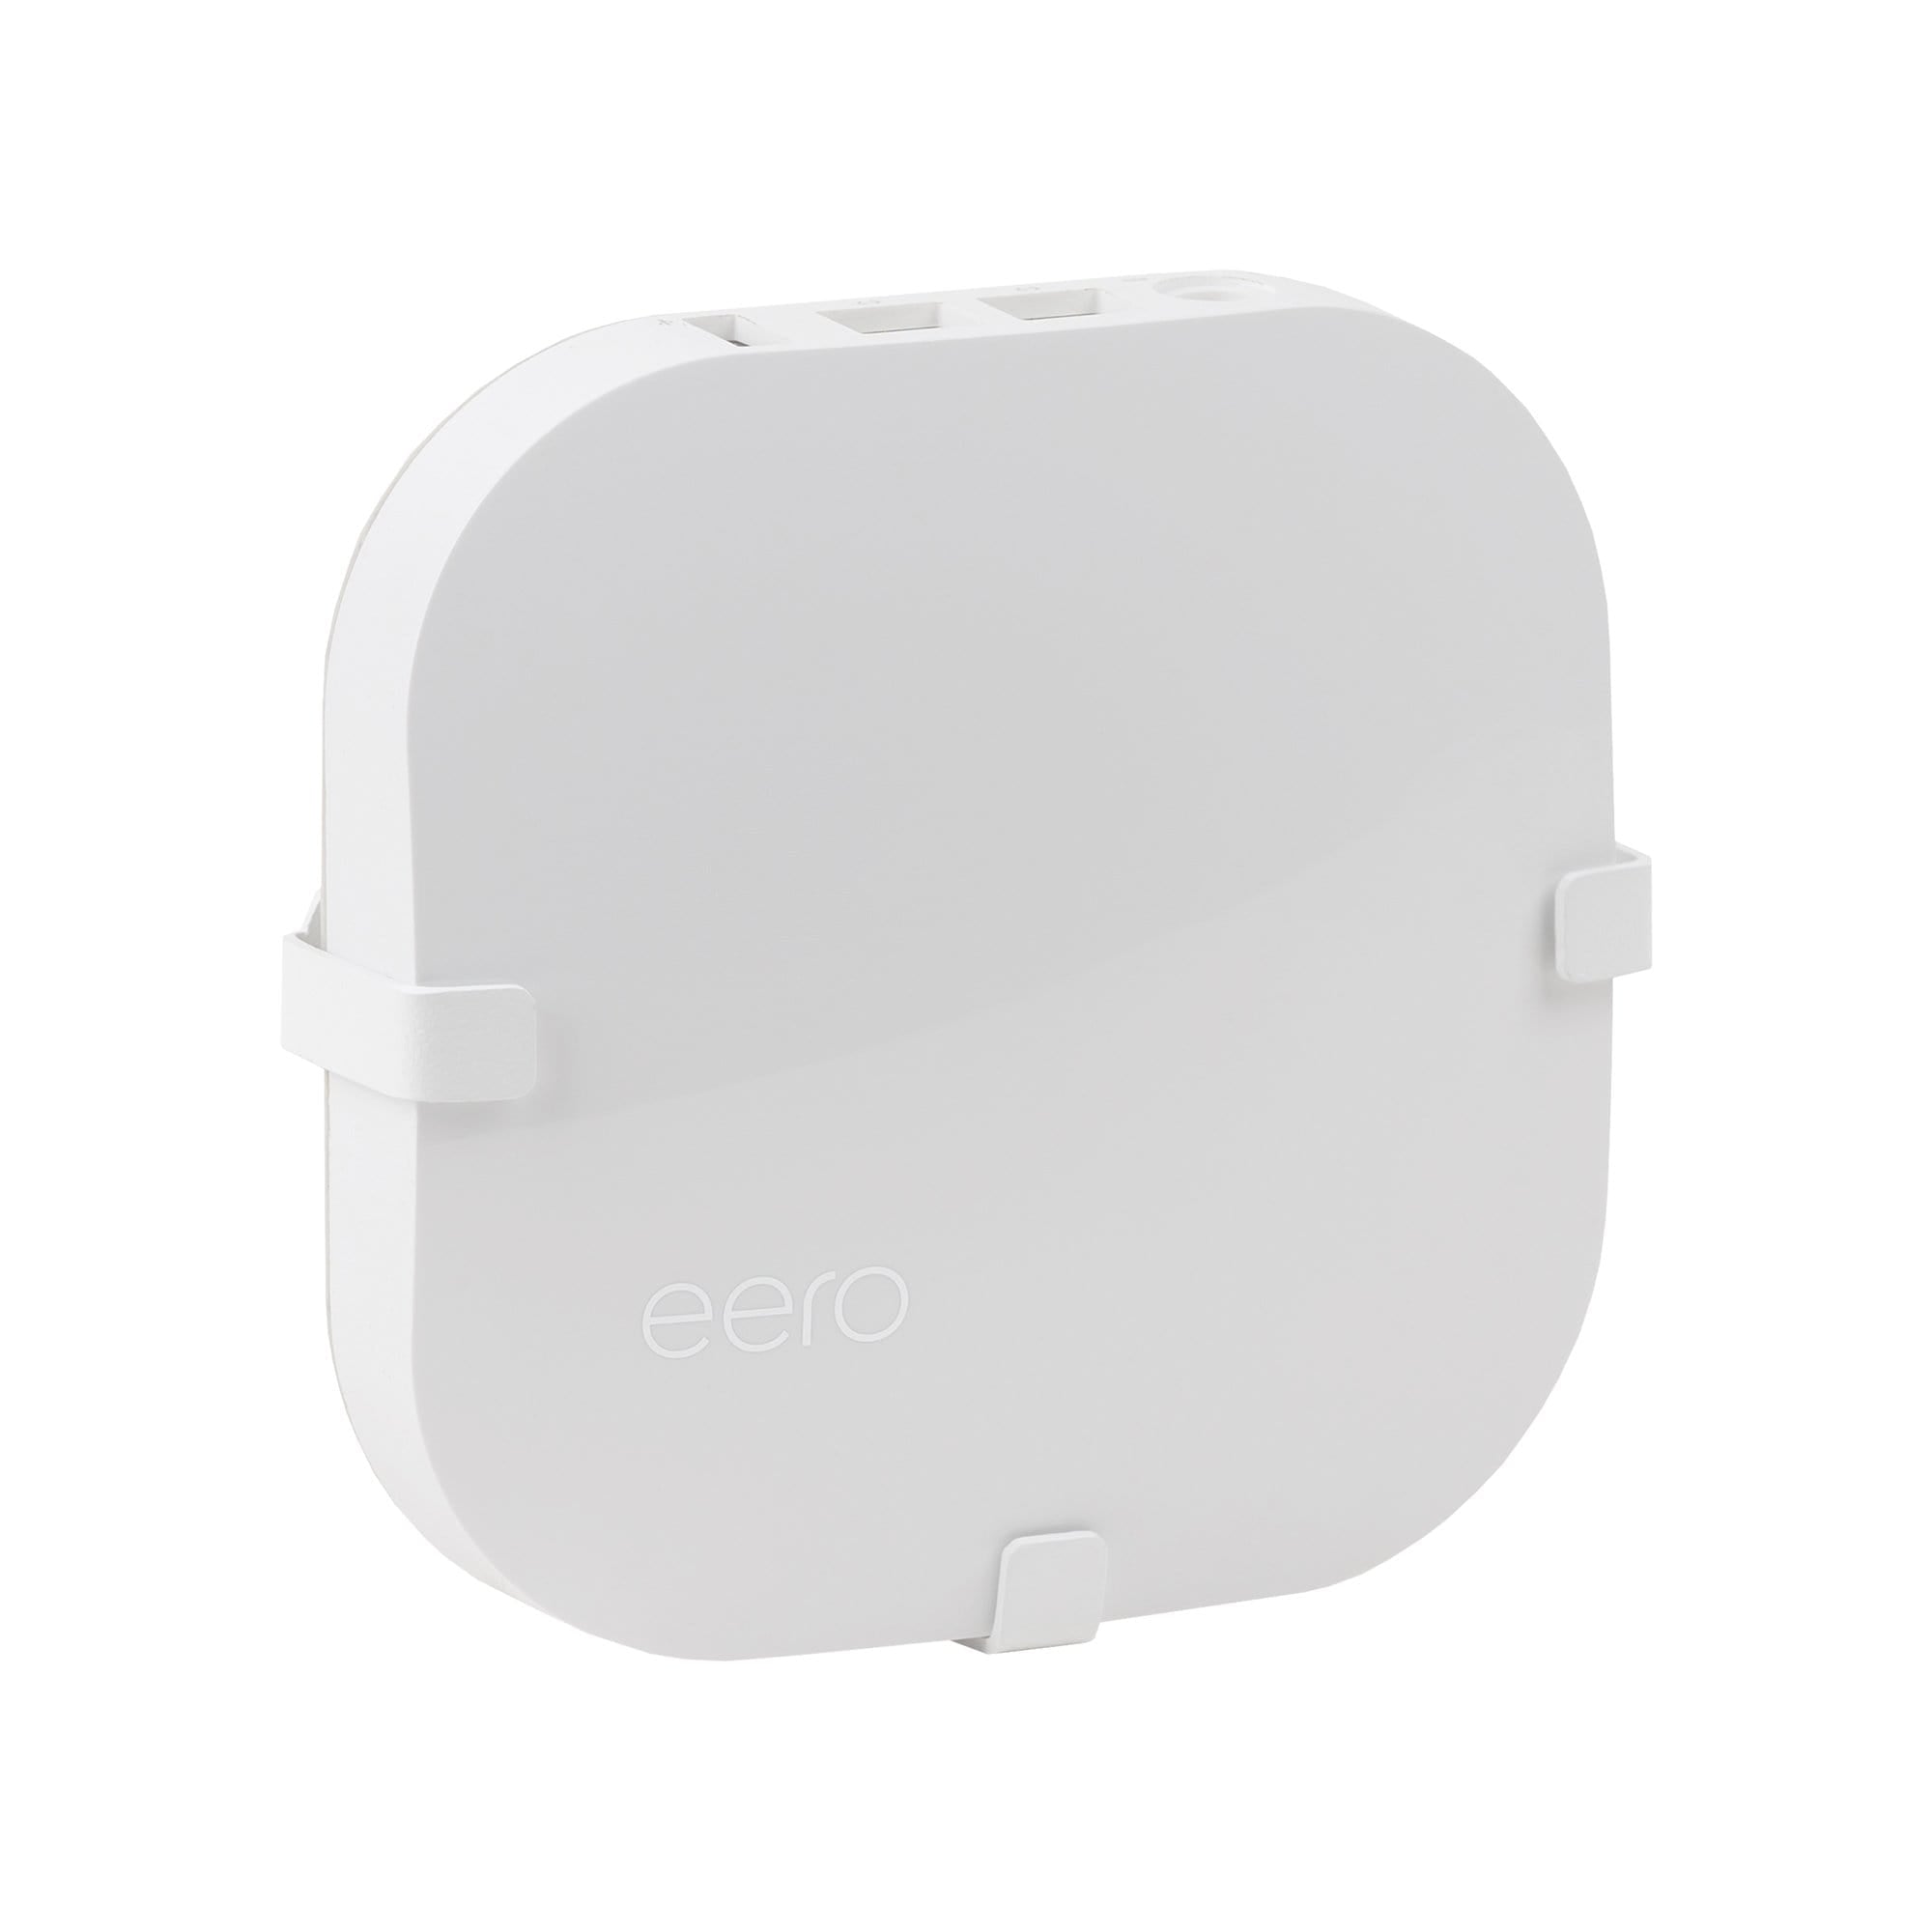 Eero mesh router shown in the HIDEit EPro Eero Pro wall mount.